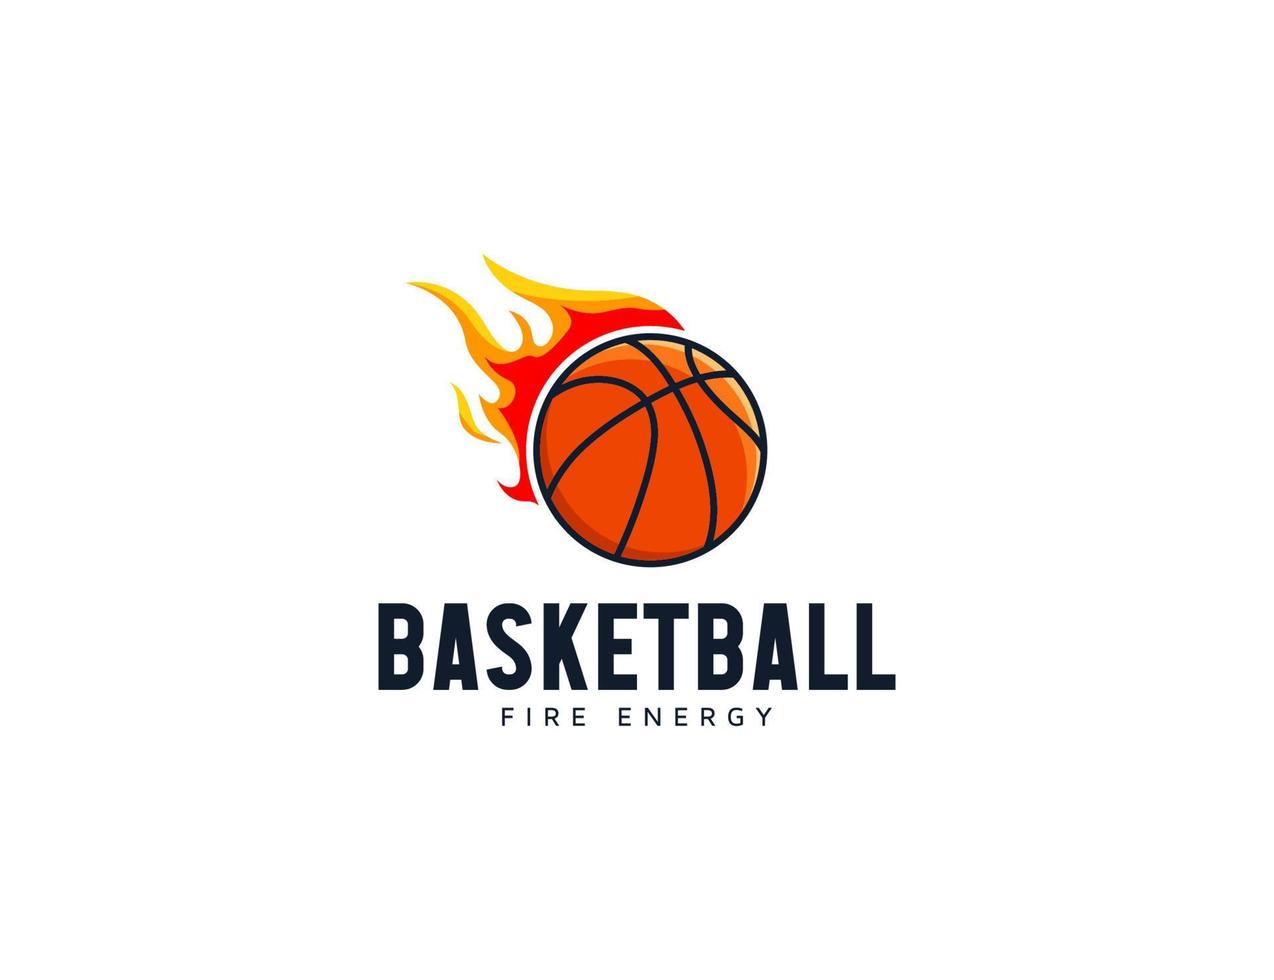 modernes basketball-emblem-logo-design mit feuerillustration vektor